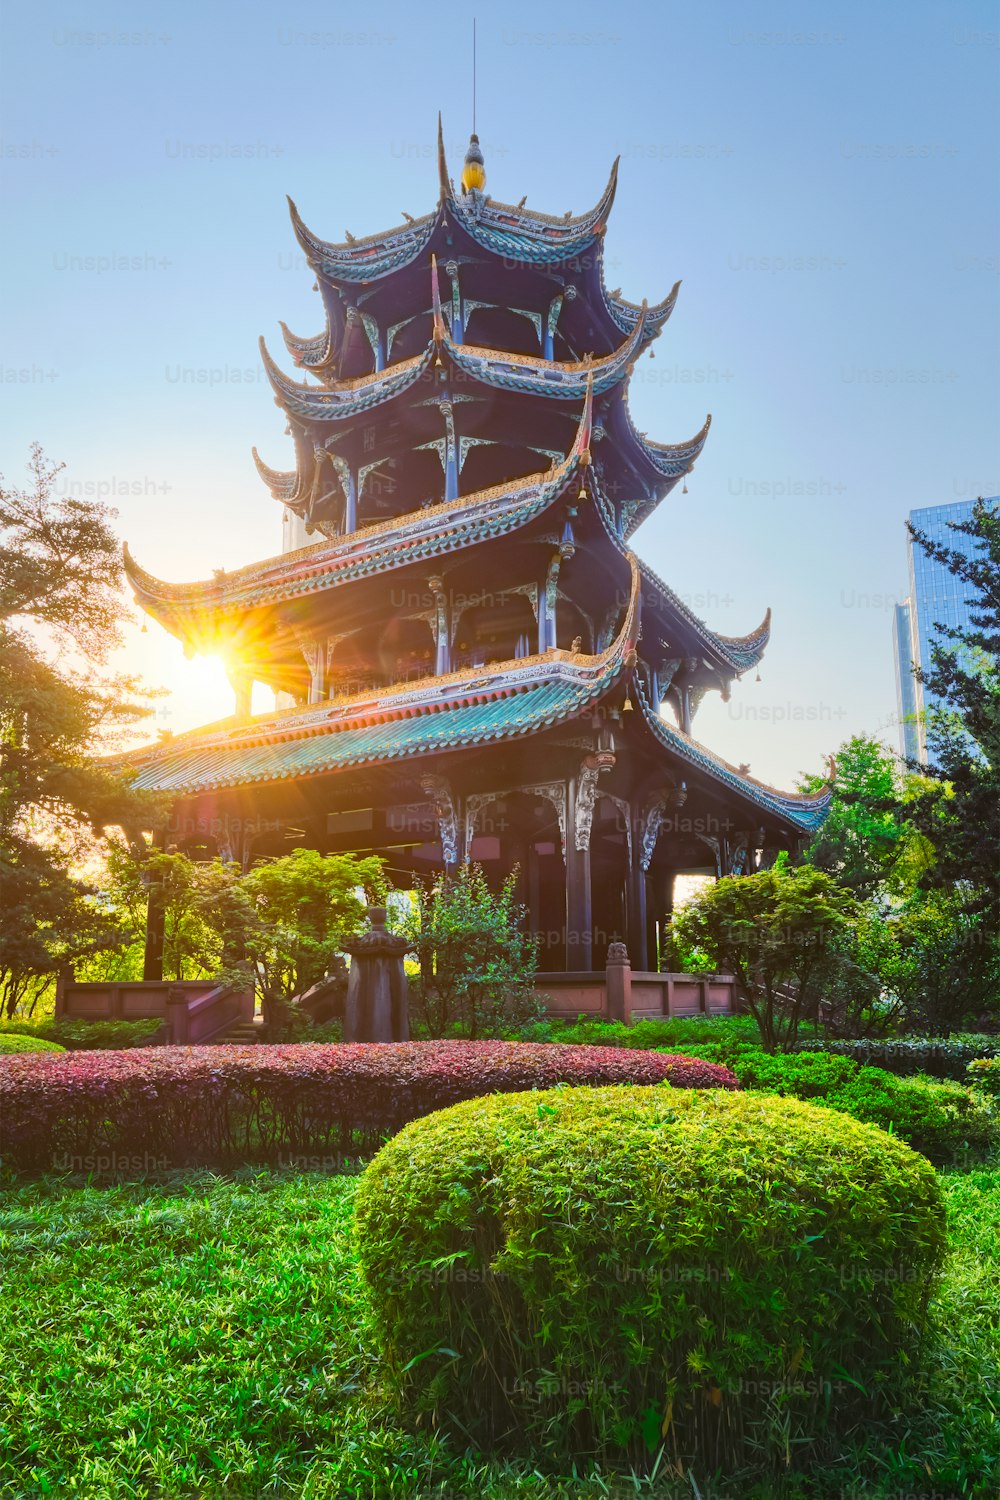 왕장루 공원의 왕장 파빌리온 (왕장 타워)은 태양과 함께 일출에 있습니다. 청두, 쓰촨, 중국